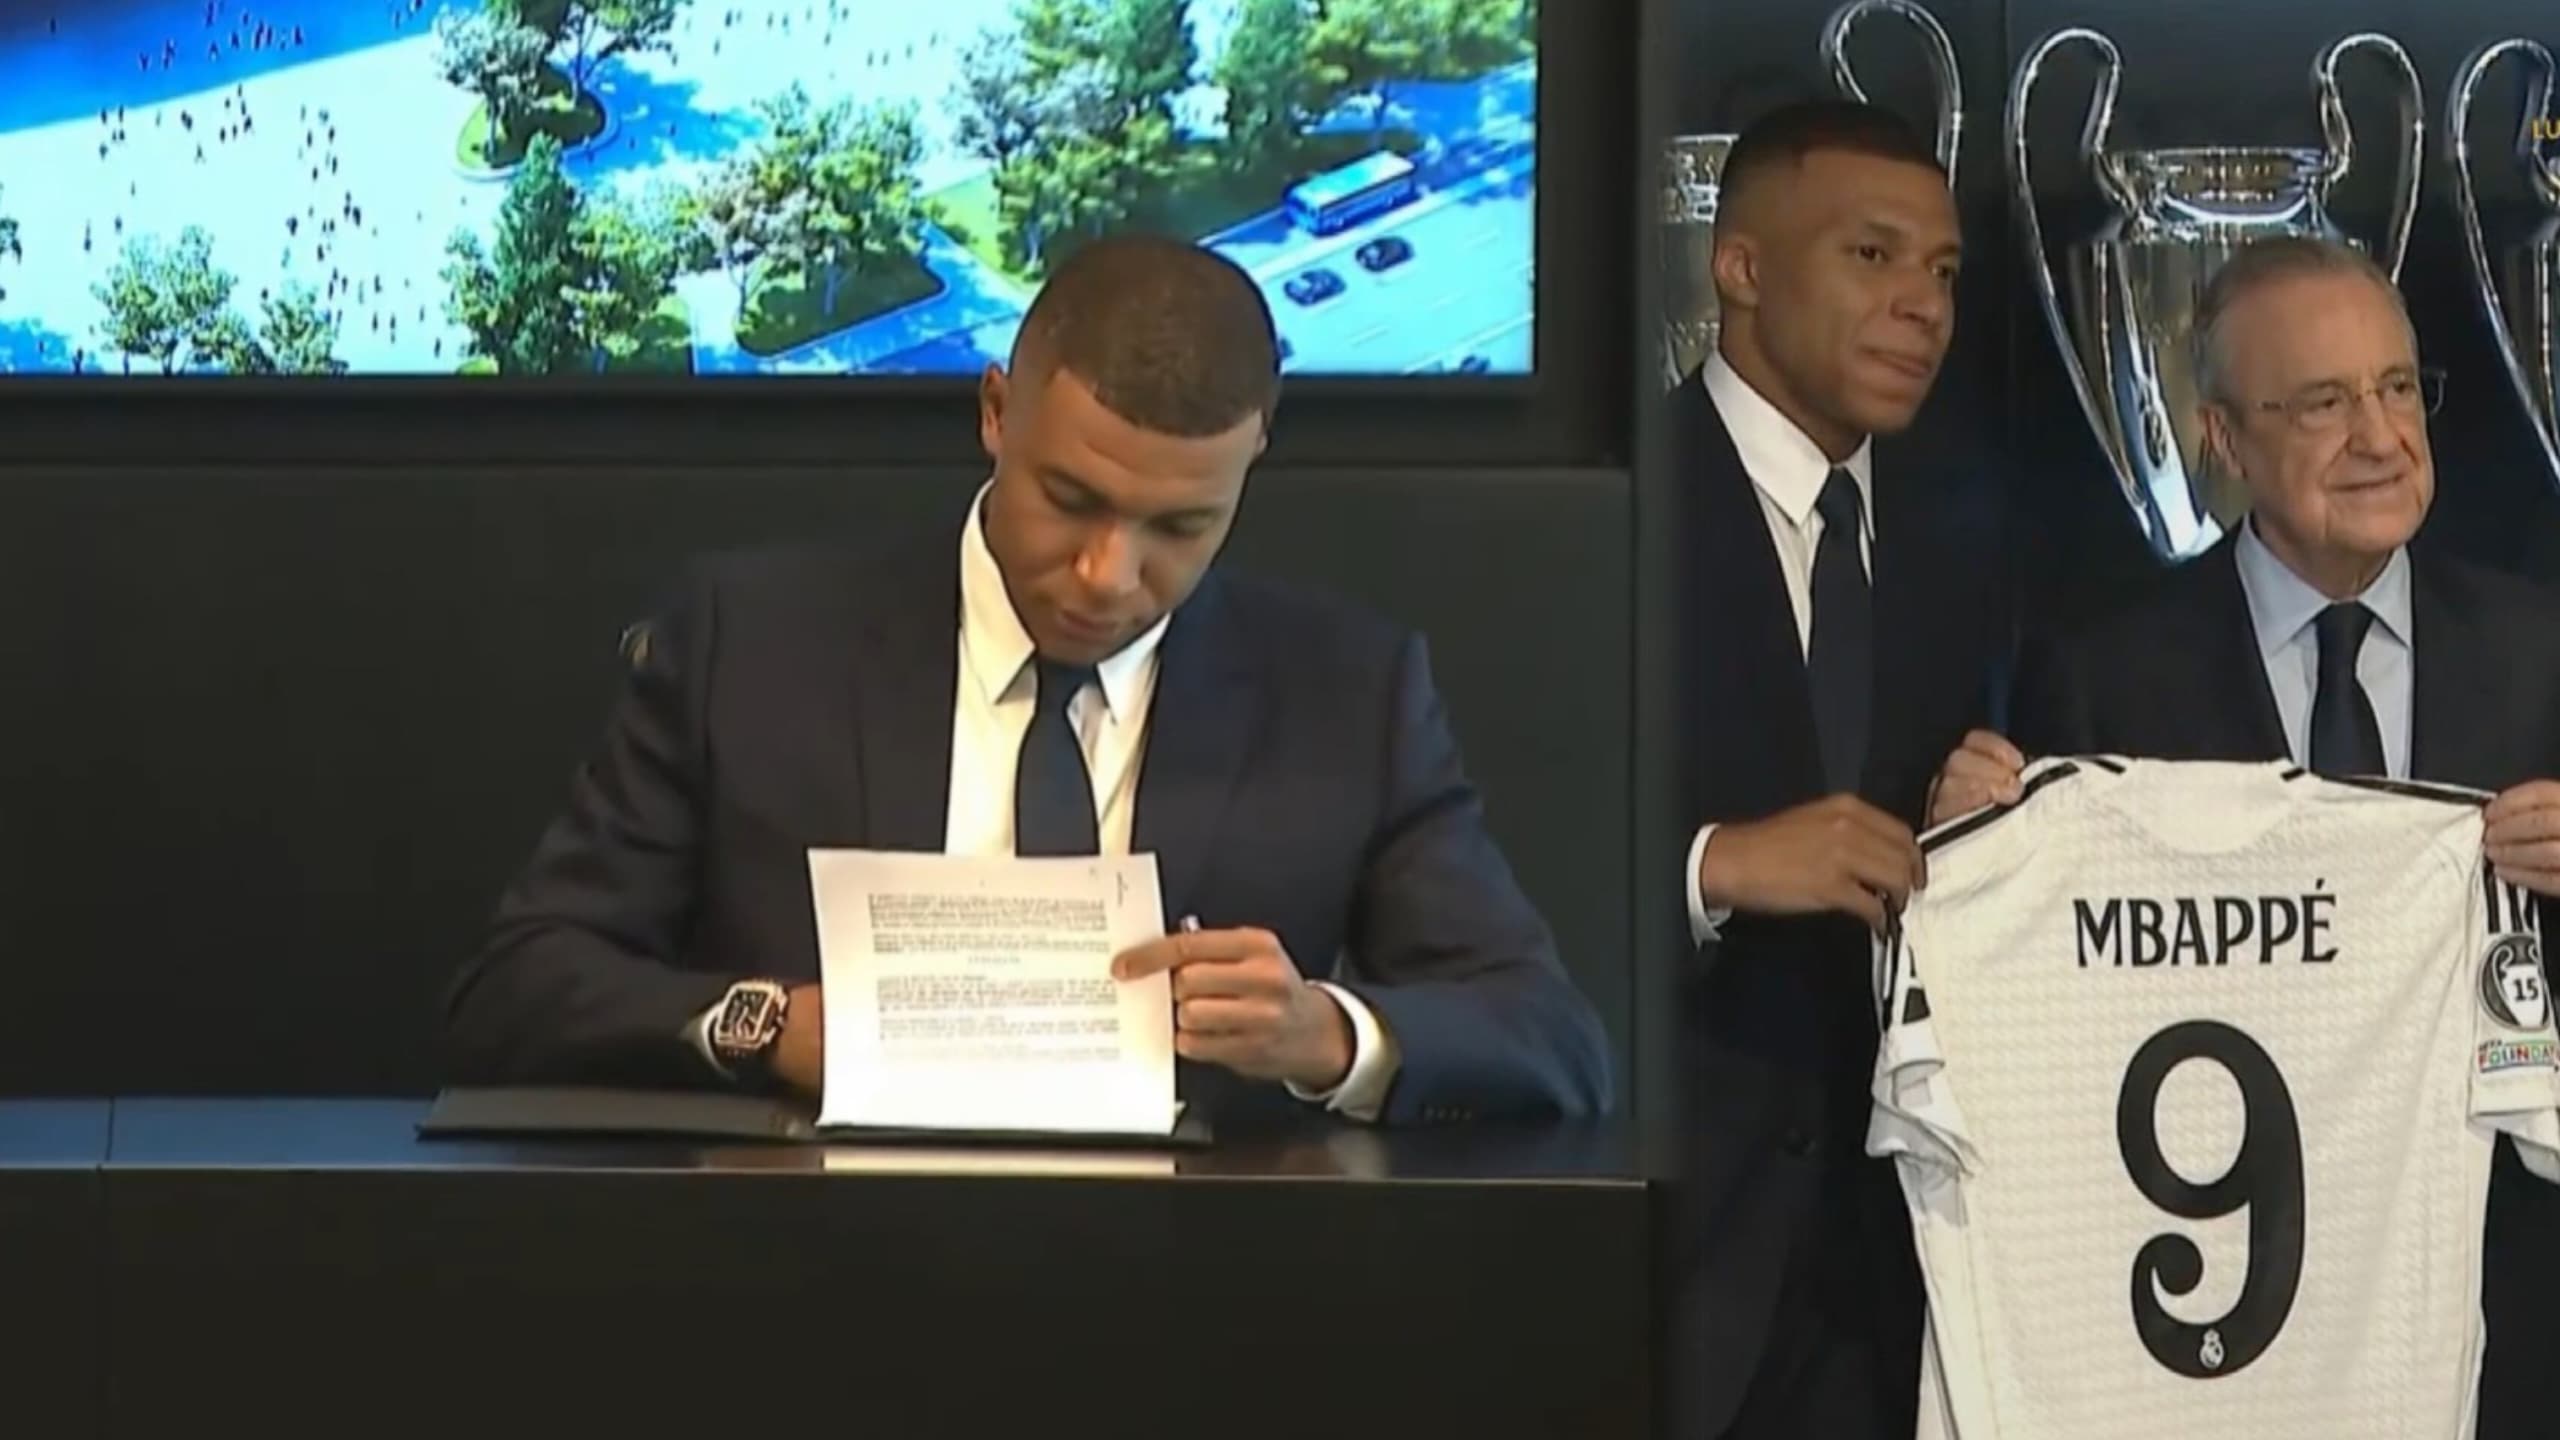 OFFICIEL : Les images éblouissantes de la signature de Mbappé au Real Madrid (VIDEO)